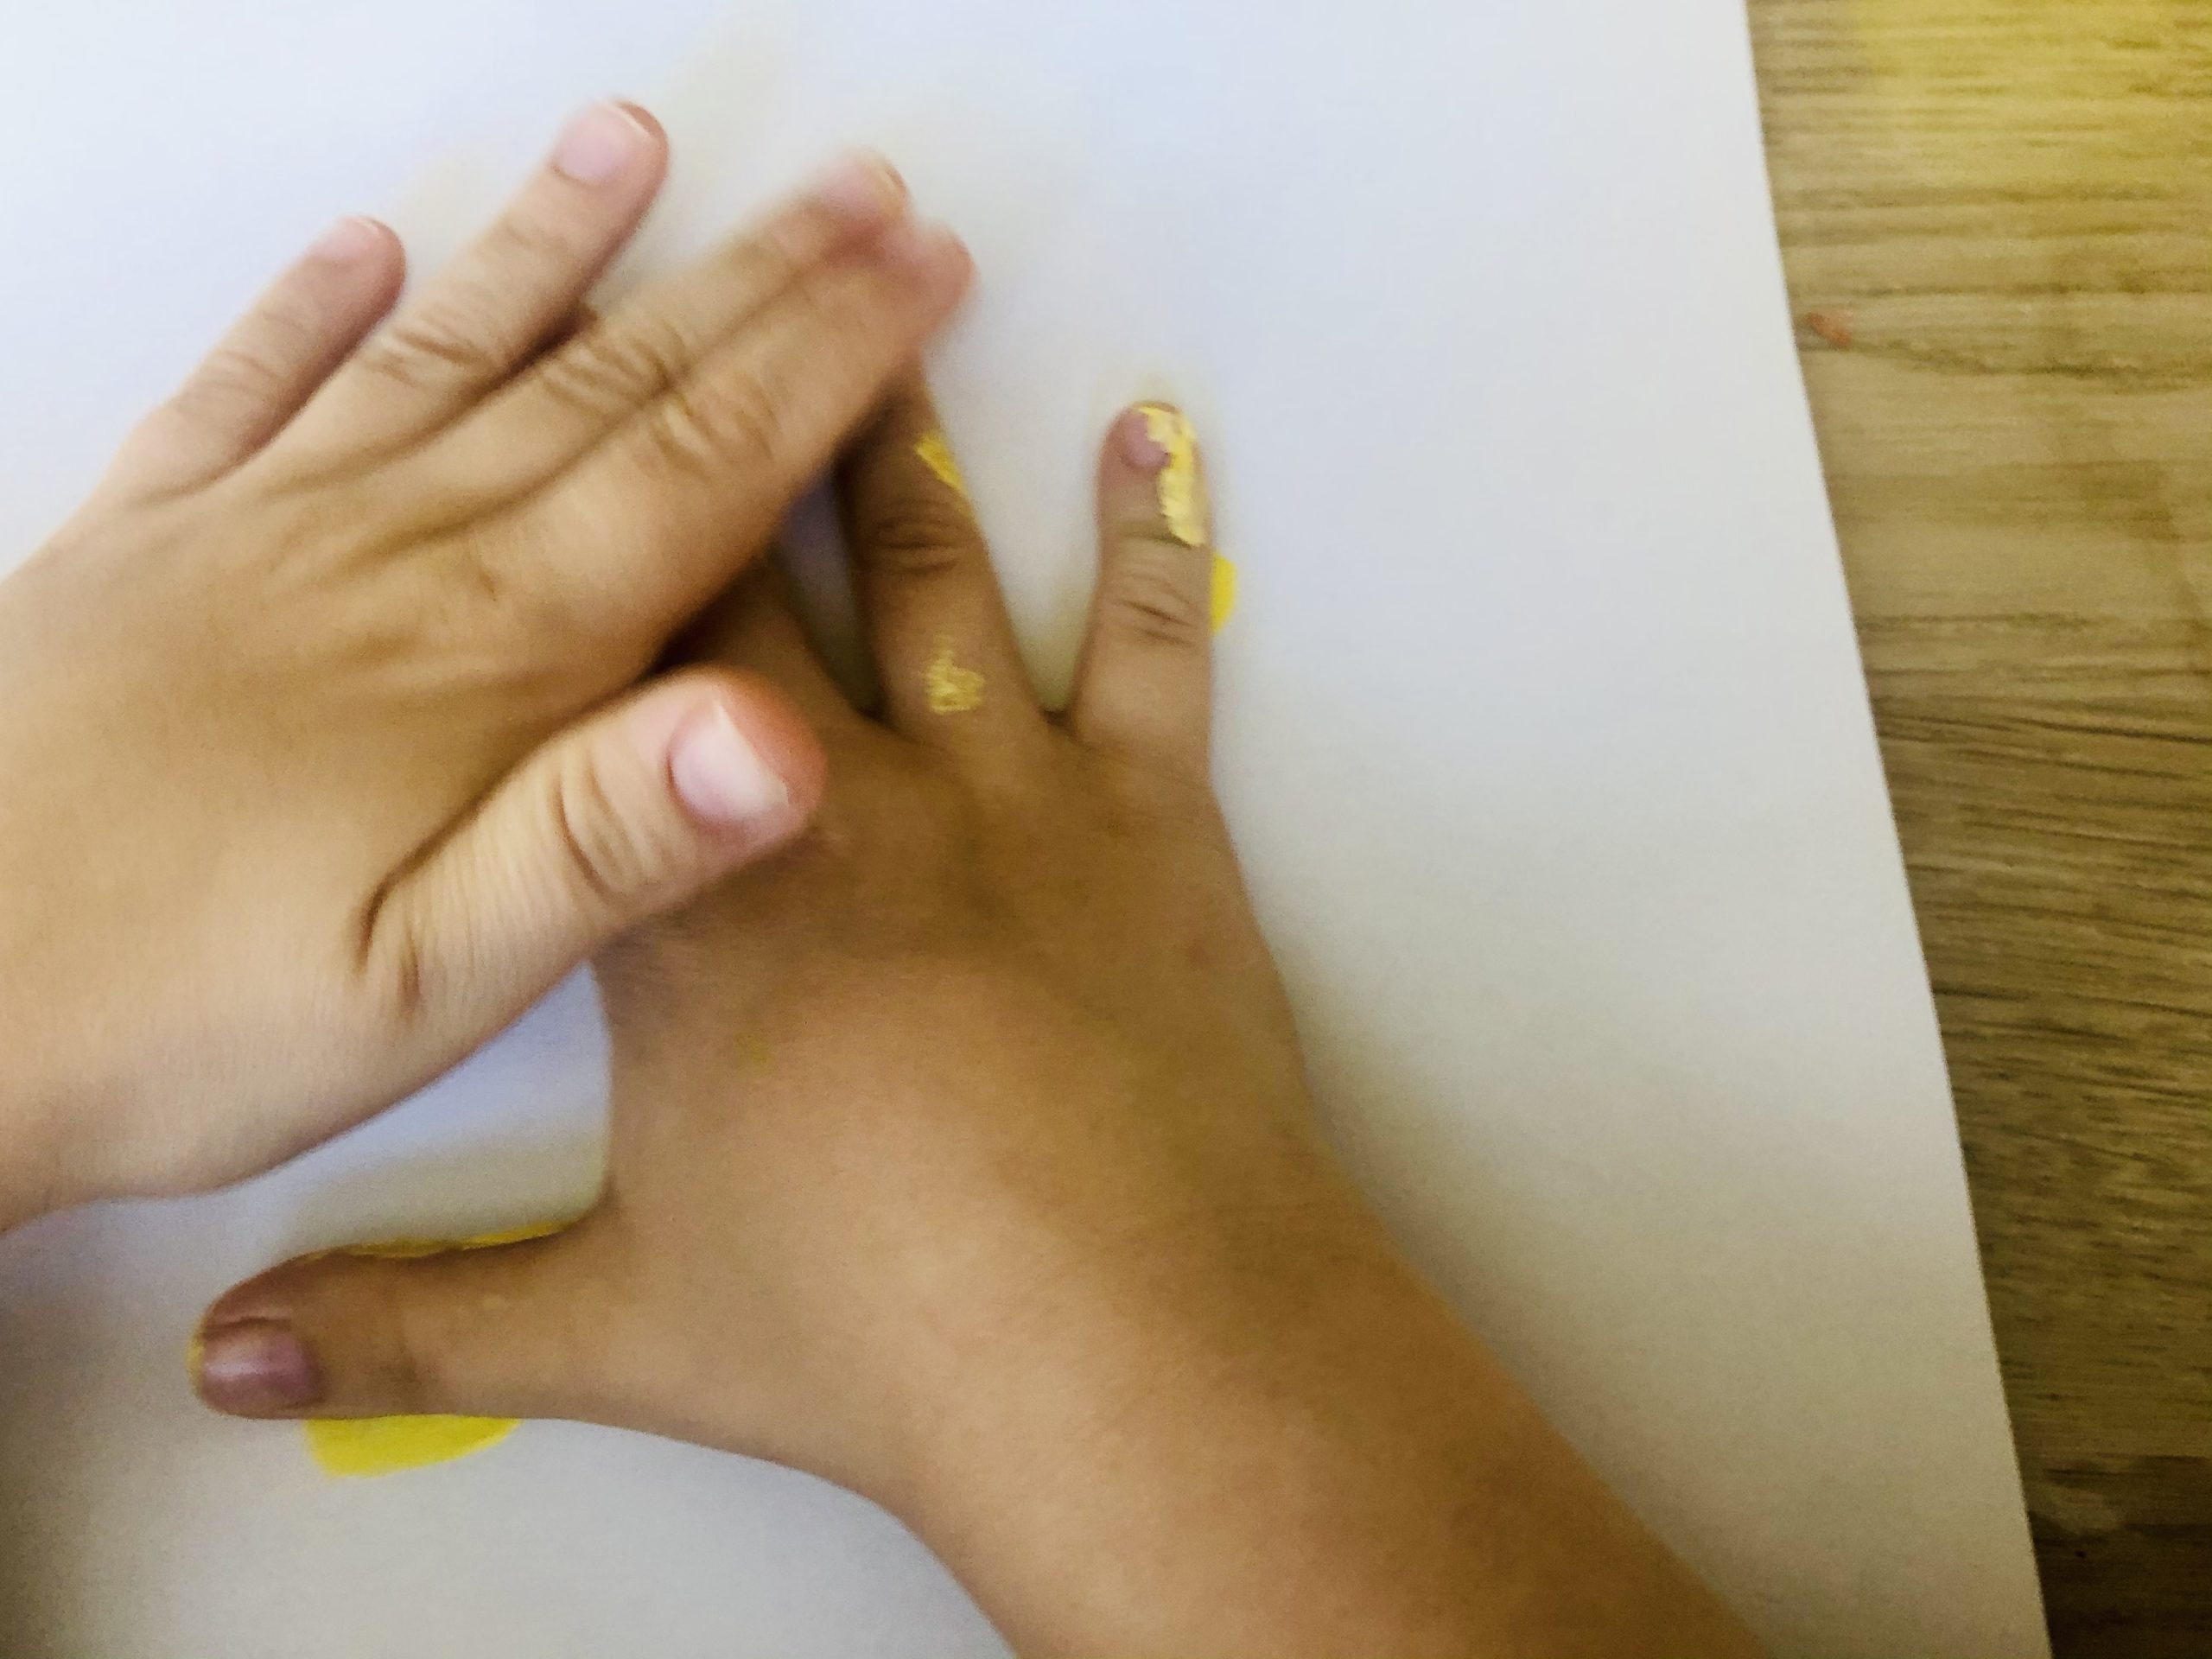 Bild zum Schritt 13 für die Kinder-Beschäftigung: 'Drückt die Hand kräftig auf das Papier.'